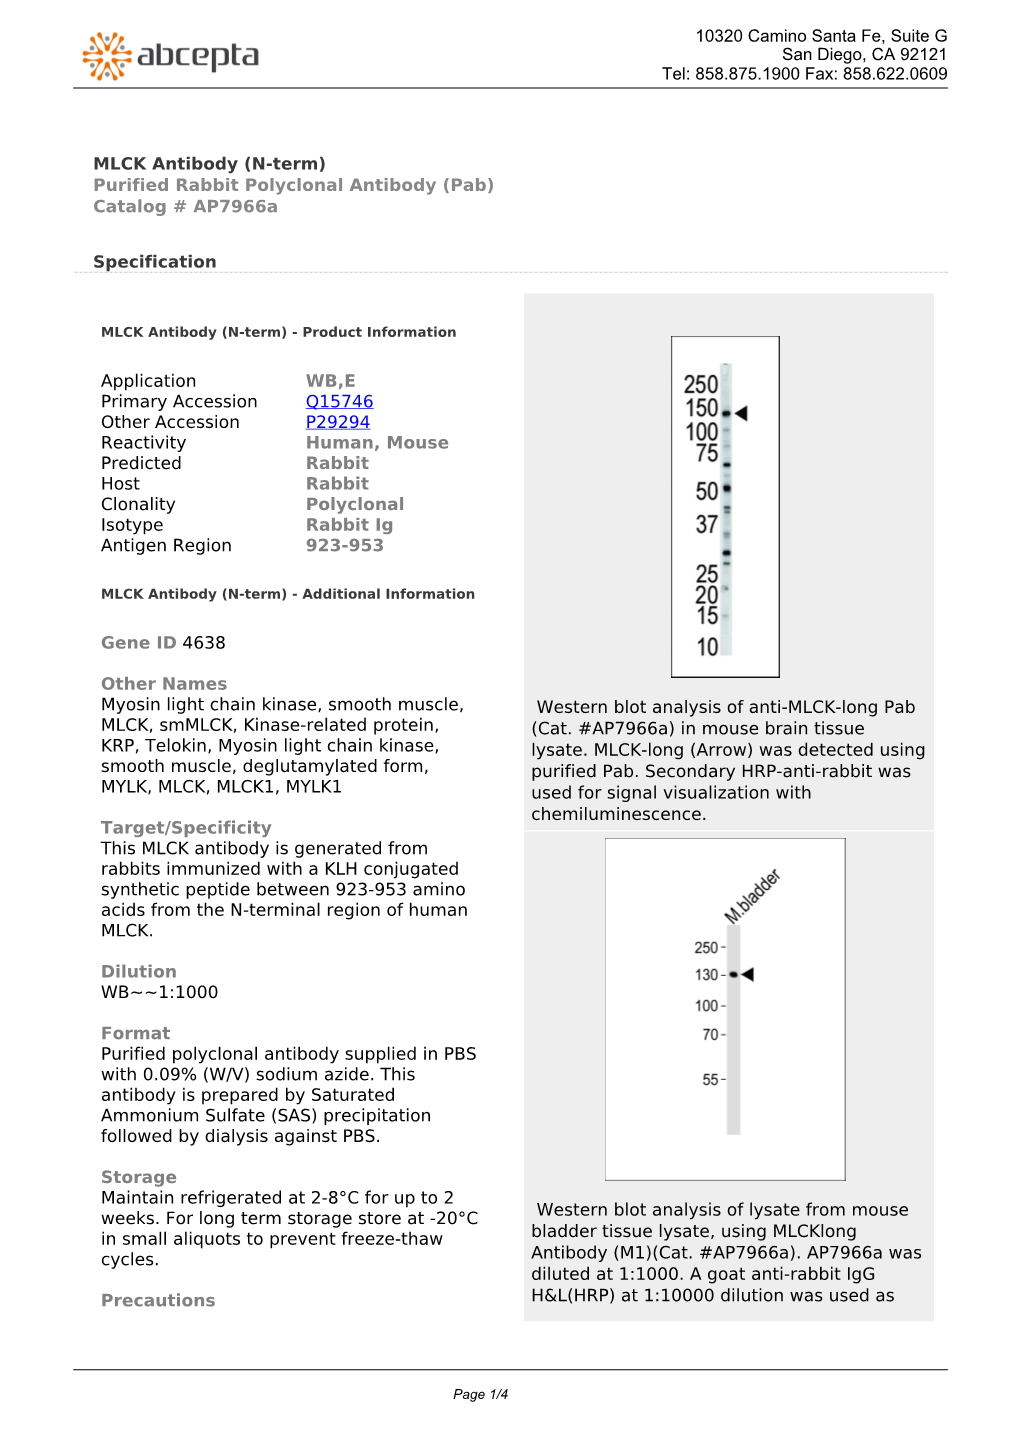 MLCK Antibody (N-Term) Purified Rabbit Polyclonal Antibody (Pab) Catalog # Ap7966a